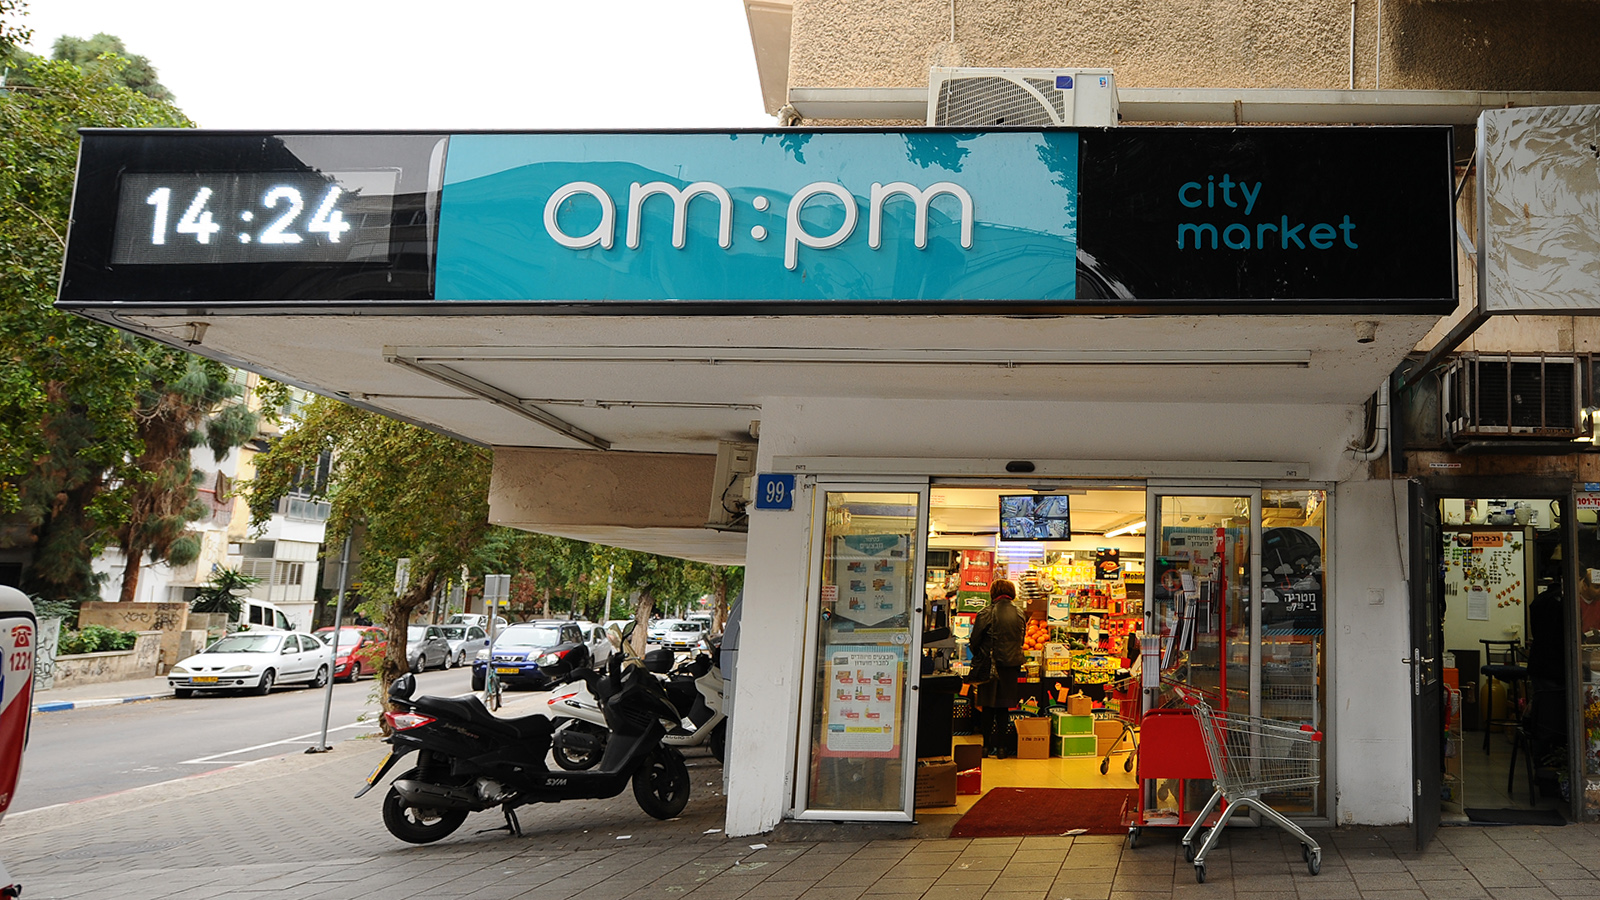 חנות am pm בתל אביב (צילום: מנדי הכטמן / פלאש 90).